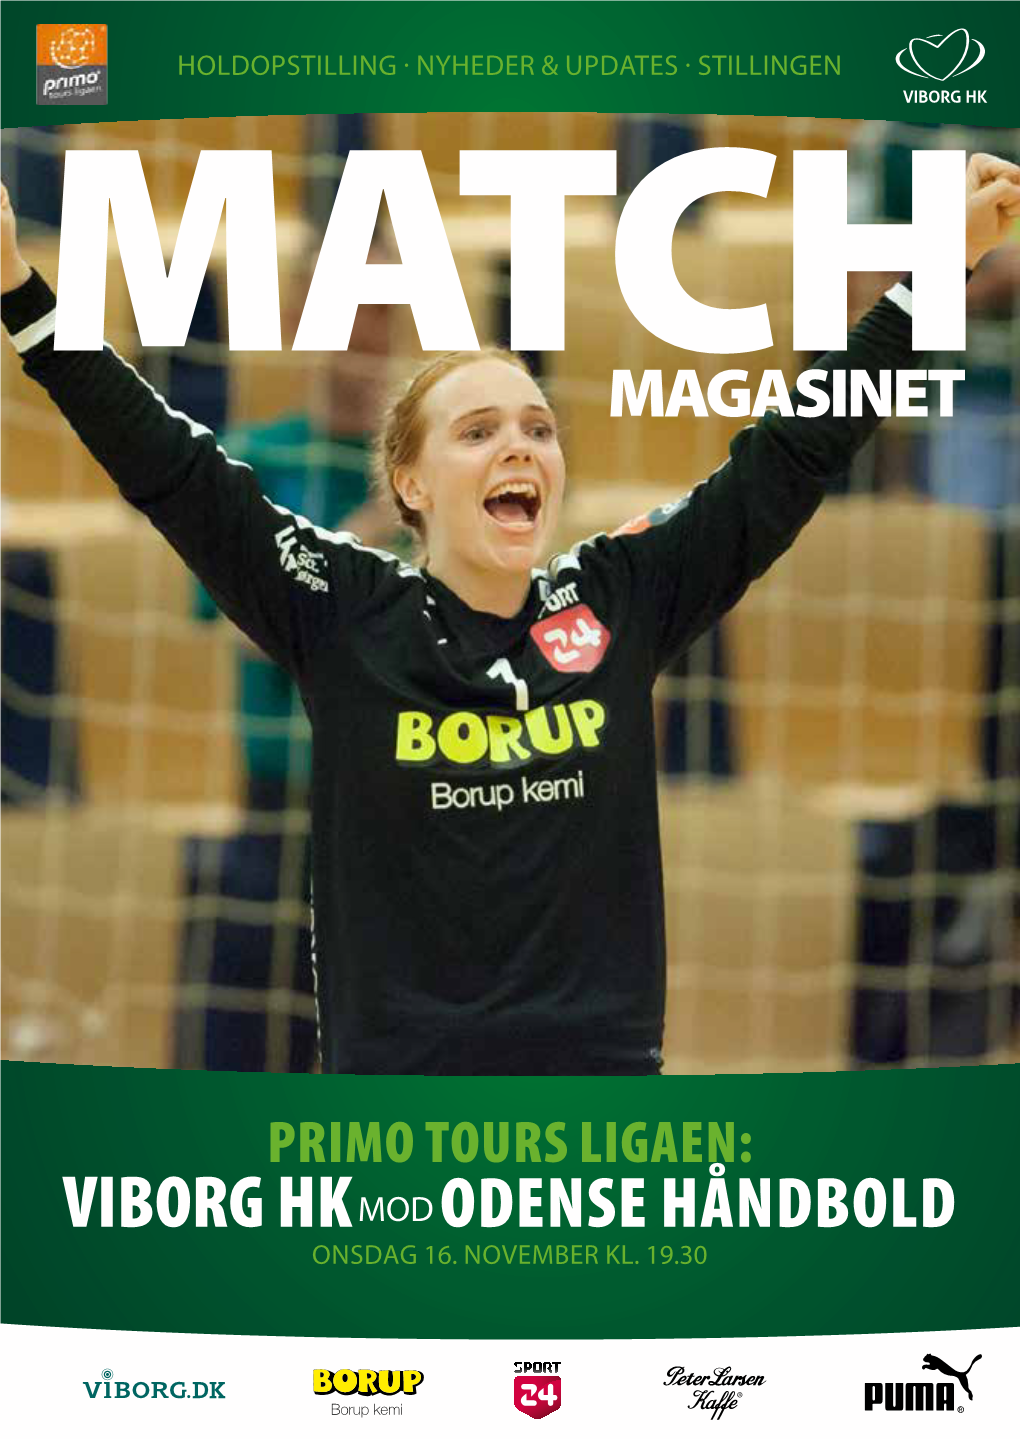 Viborg Hkmod Odense Håndbold